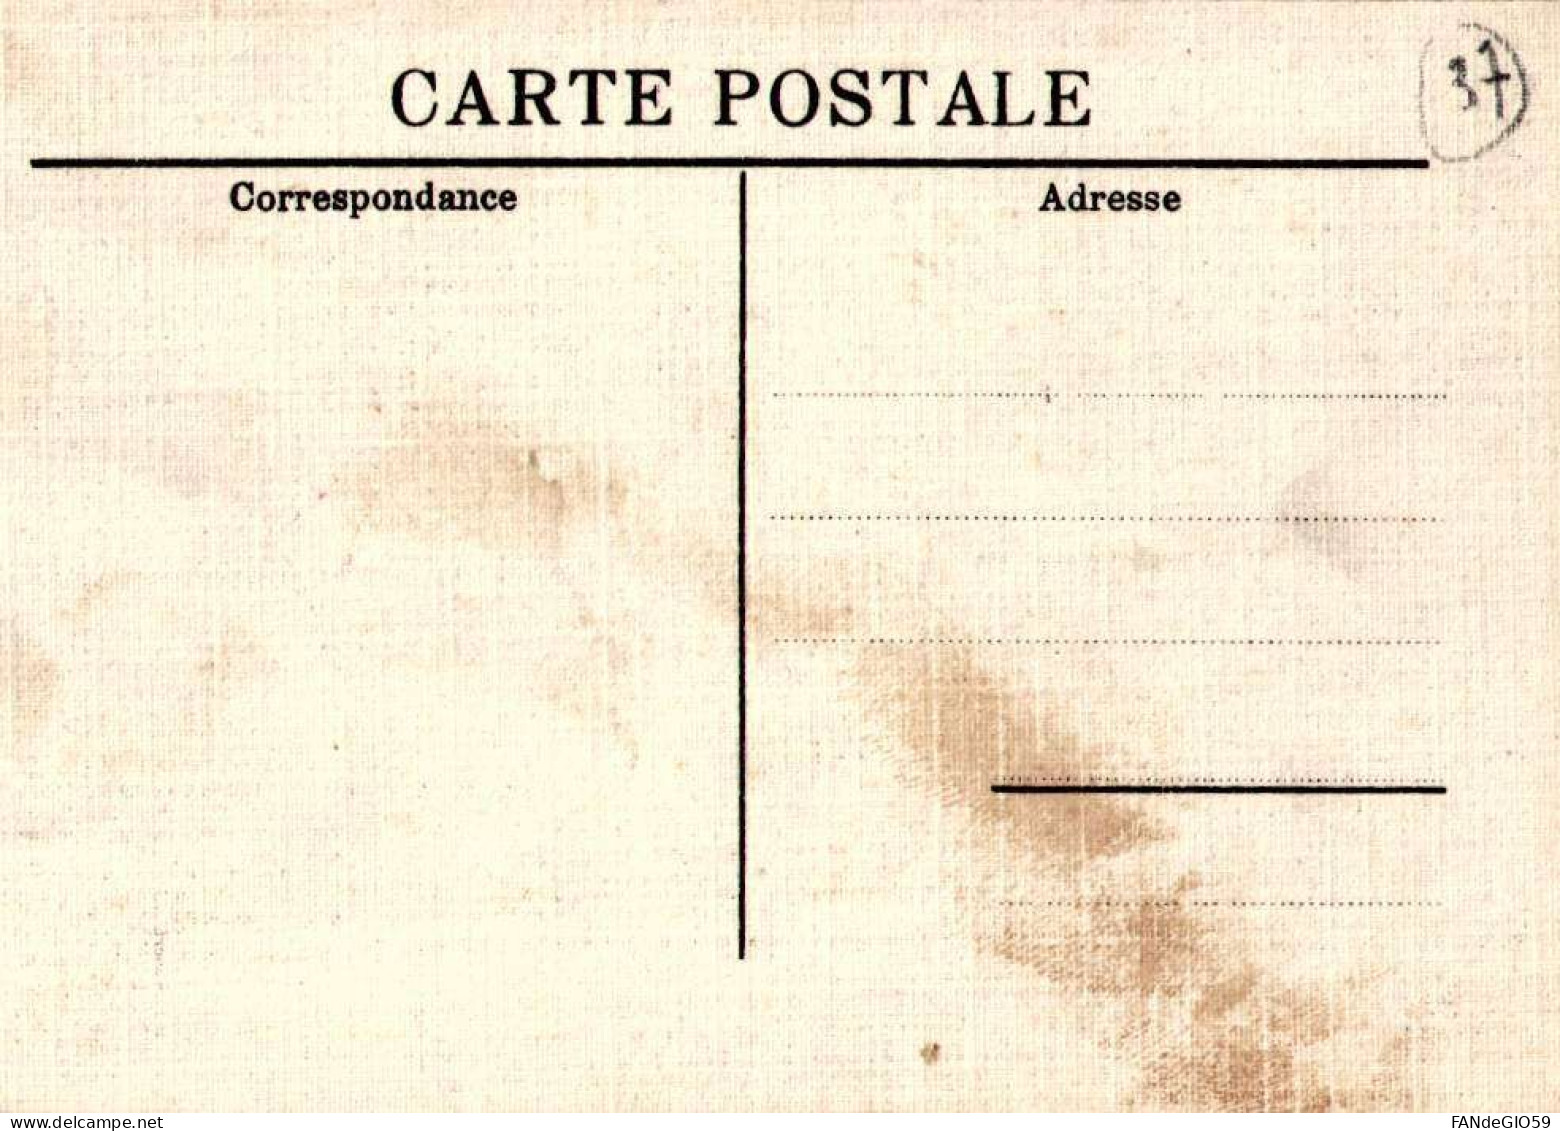 CHATEAU       VILLANDRY   CARTE TOILEE /// 30 - Châteaux